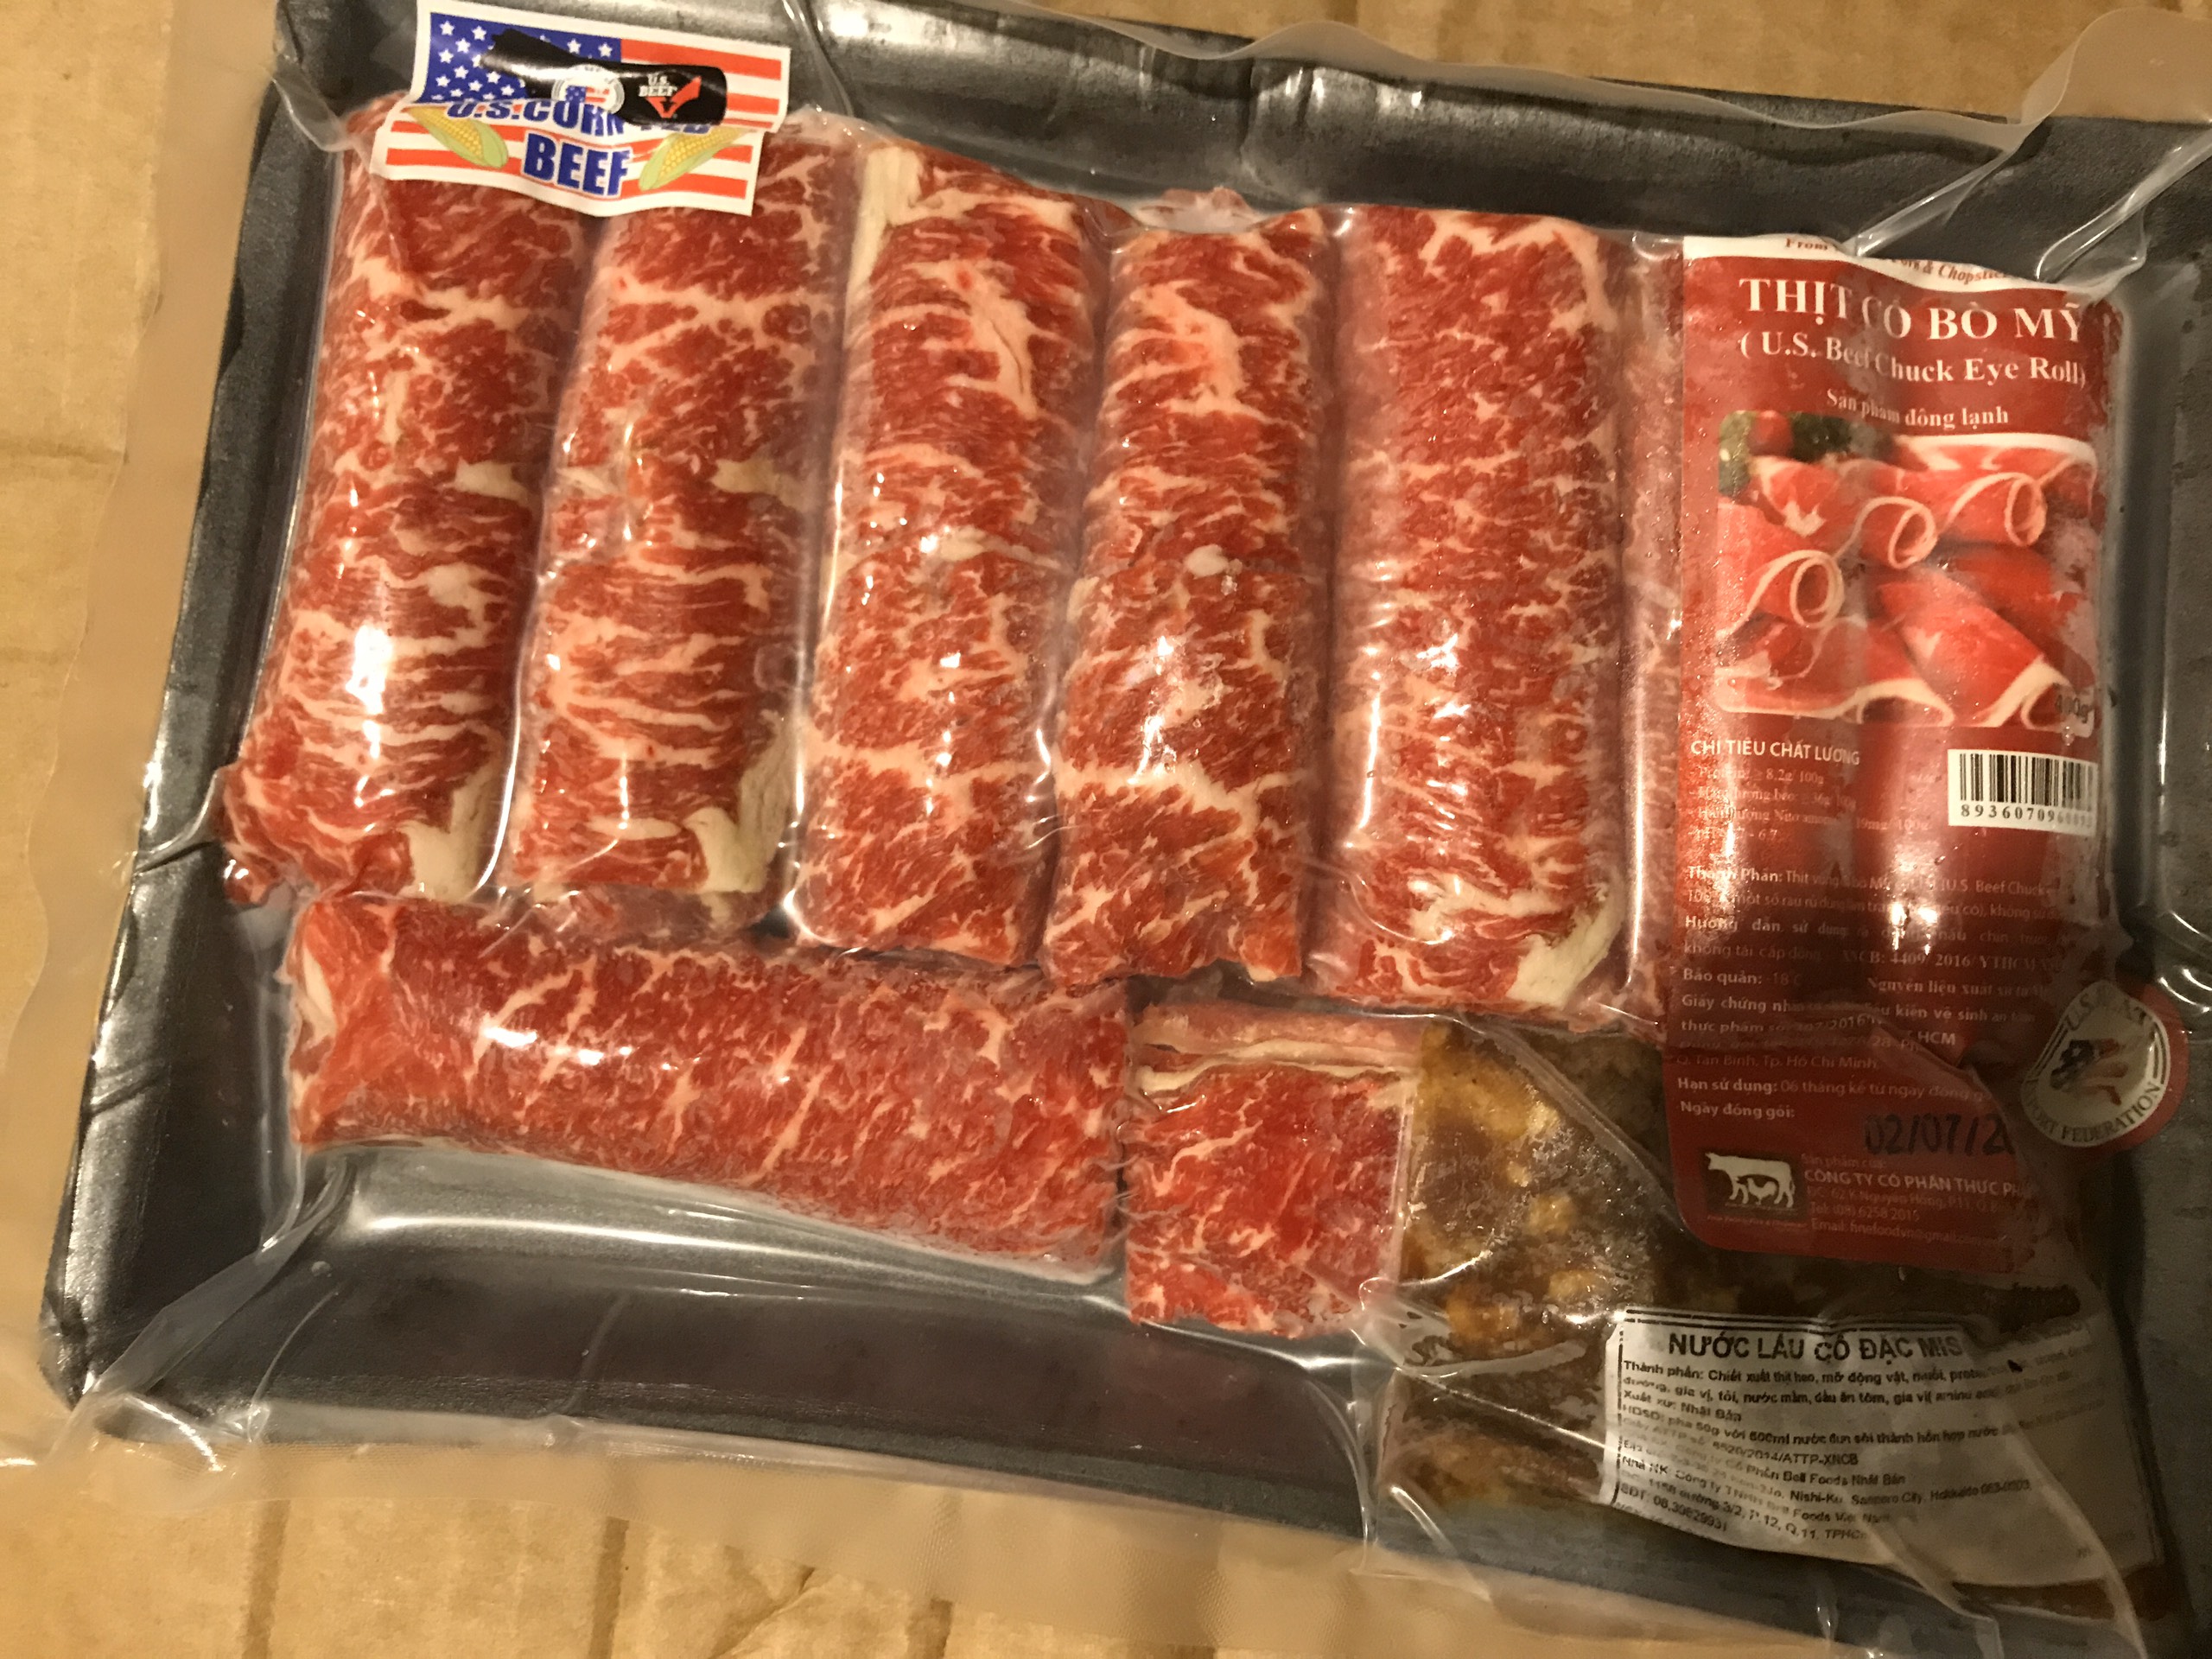 CHỈ GIAO HCM Thịt Vùng cổ Bò mỹ - US Beef Chuck Eye Roll - 500gram